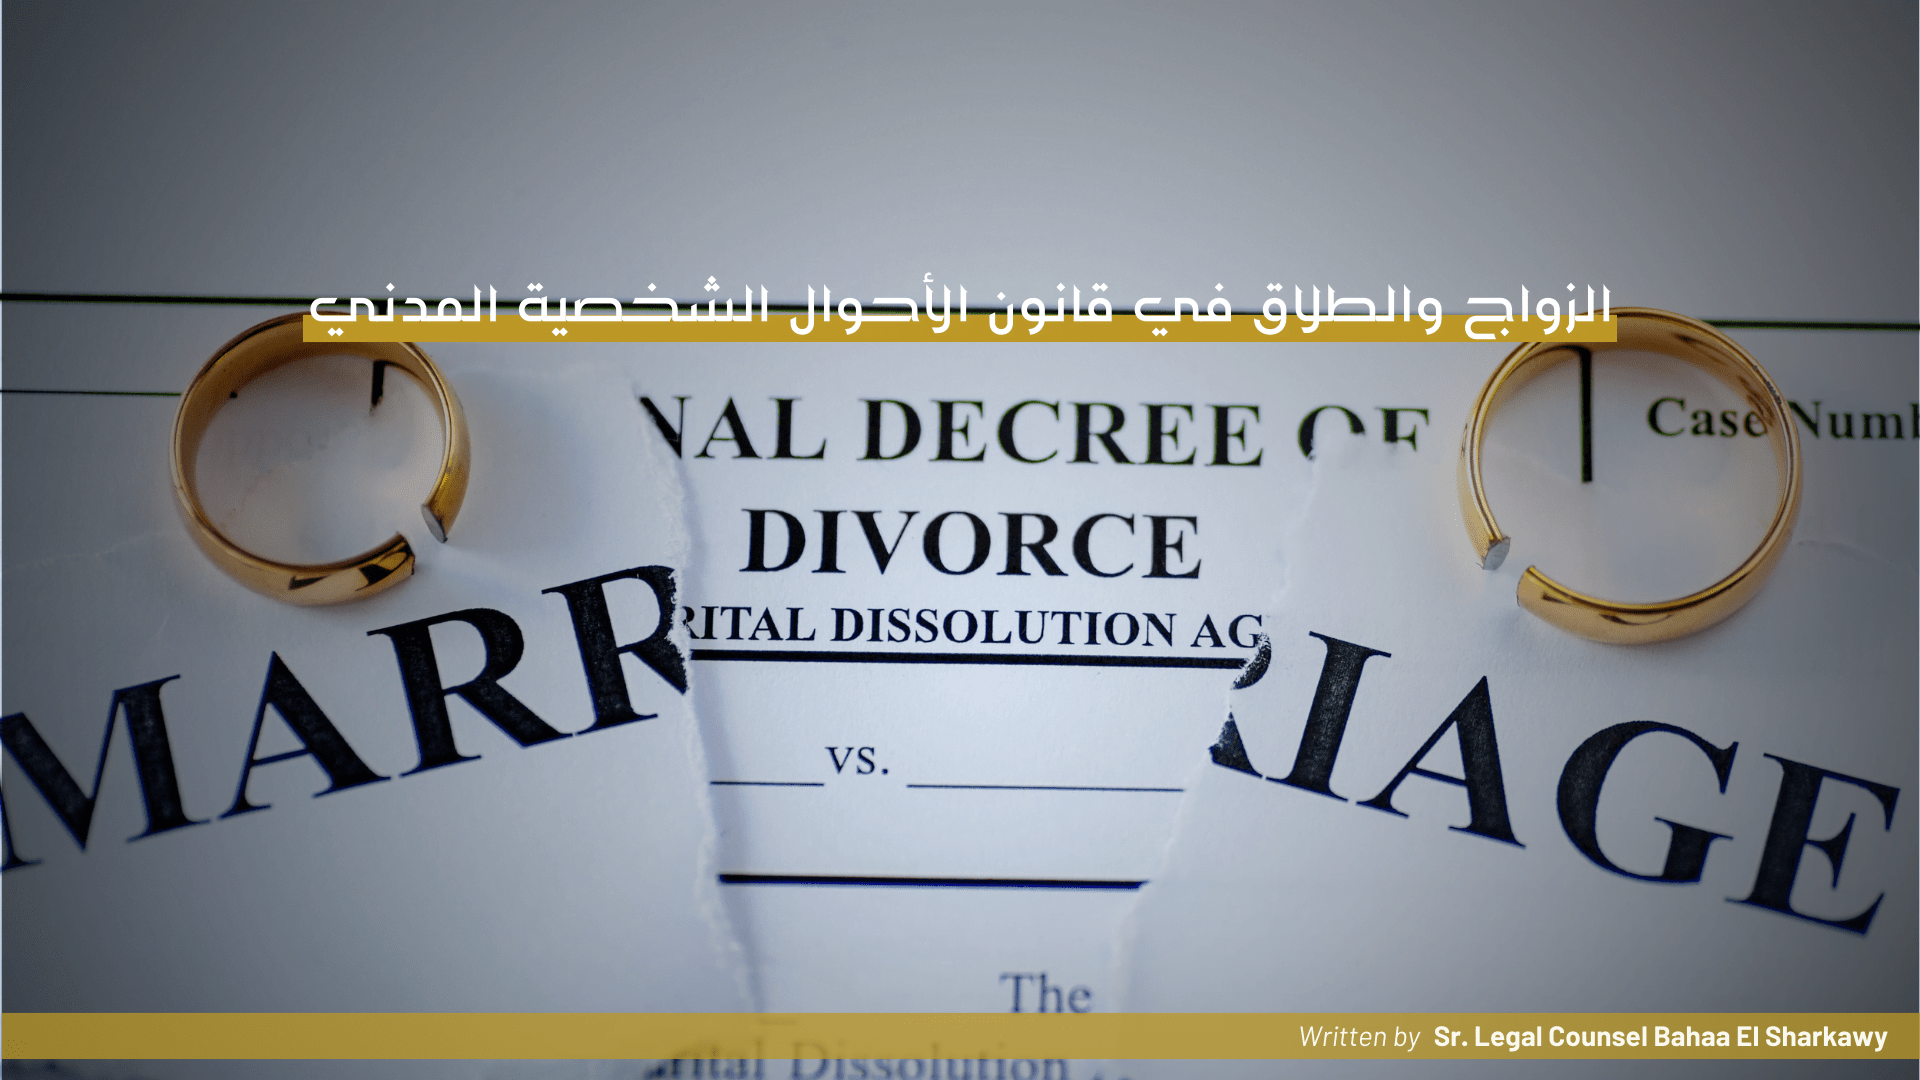 الزواج والطلاق في قانون الأحوال الشخصية المدني